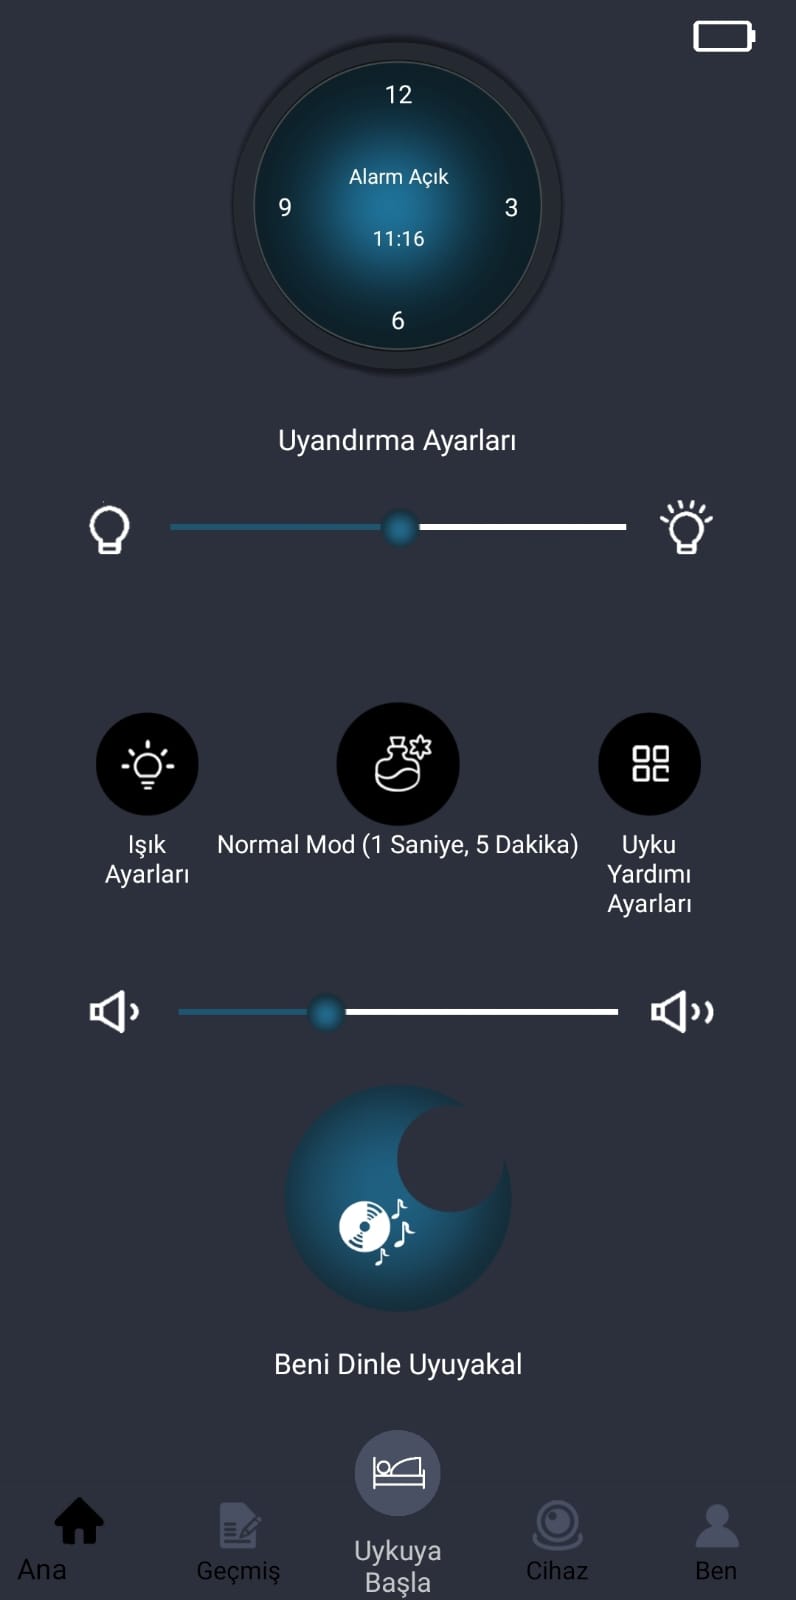 Stobom mini Uygulaması ile Kontrol Sizde   Uygulama ile uyku ve uyandırma senaryolarını, alarm, aromaterapi, ışık ayarlarını kolaylıkla ayarlayabilirsiniz.